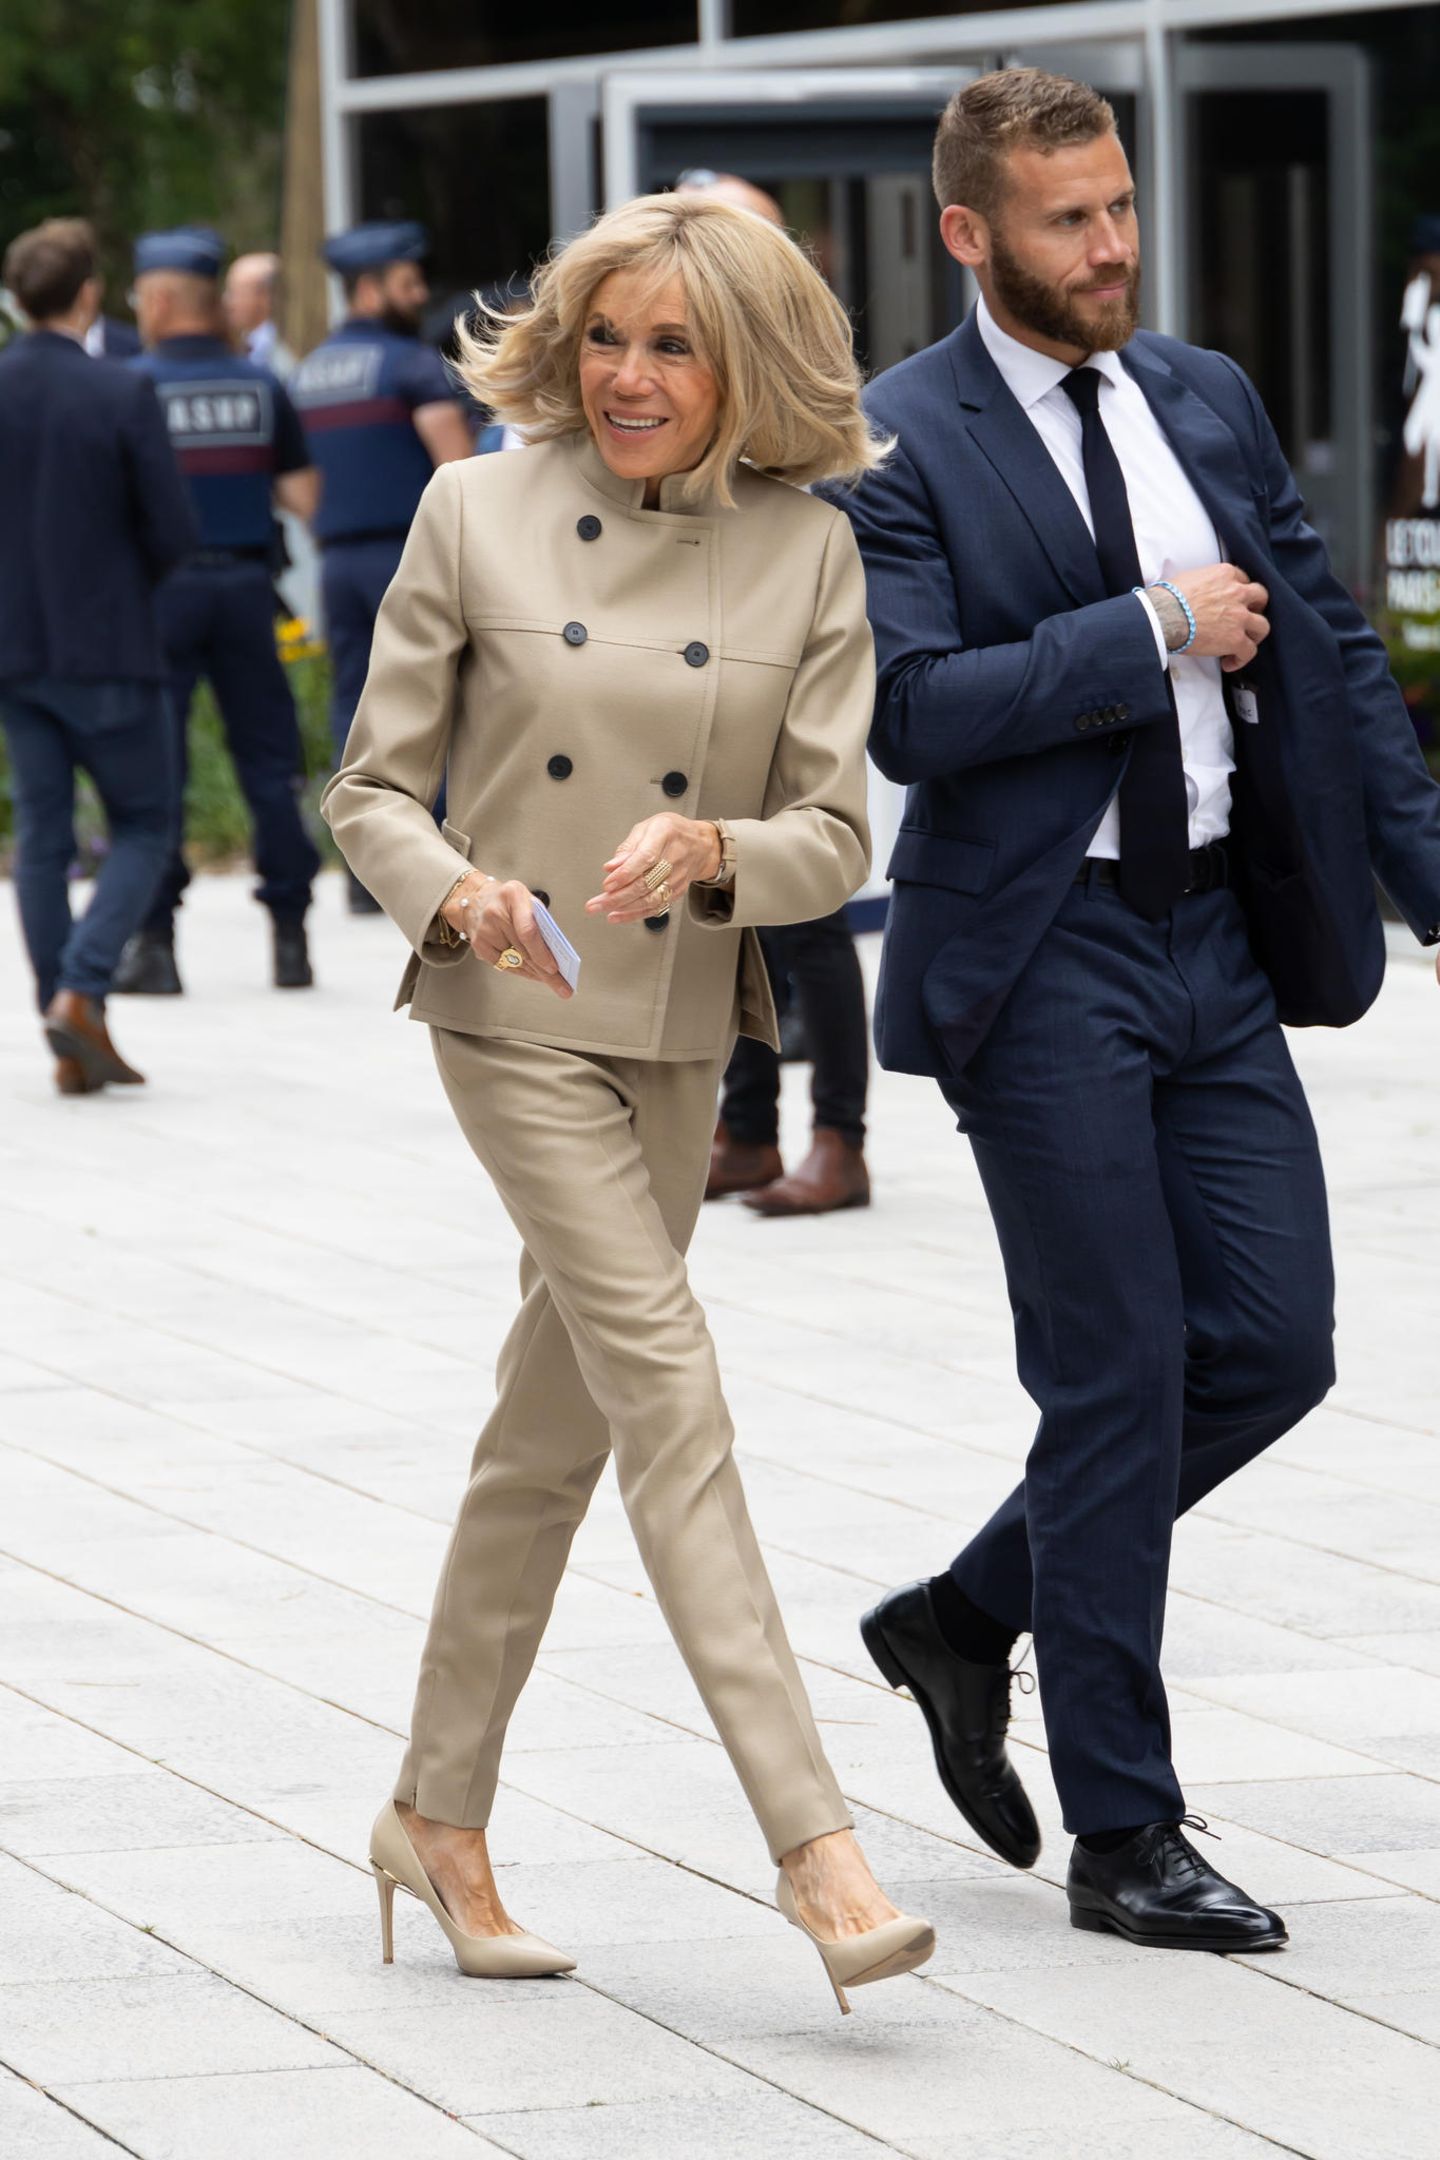 Es ist eine richtungsweisende Parlamentswahl für Frankreich, bei der auch Brigitte Macron ihre Stimme abzugeben weiß. Die Ehefrau von Emmanuel Macron ist sich um die Wichtigkeit des Anlasses bewusst und inszeniert dafür eine exquisite Kombination aus doppelreihiger Kurzjacke und enger Röhrenhose, die auf High Heels trifft. In leicht gräulichem und beigefarbenem Style avanciert sie in Sachen Fashion wortwörtlich zur Crème de la Crème.